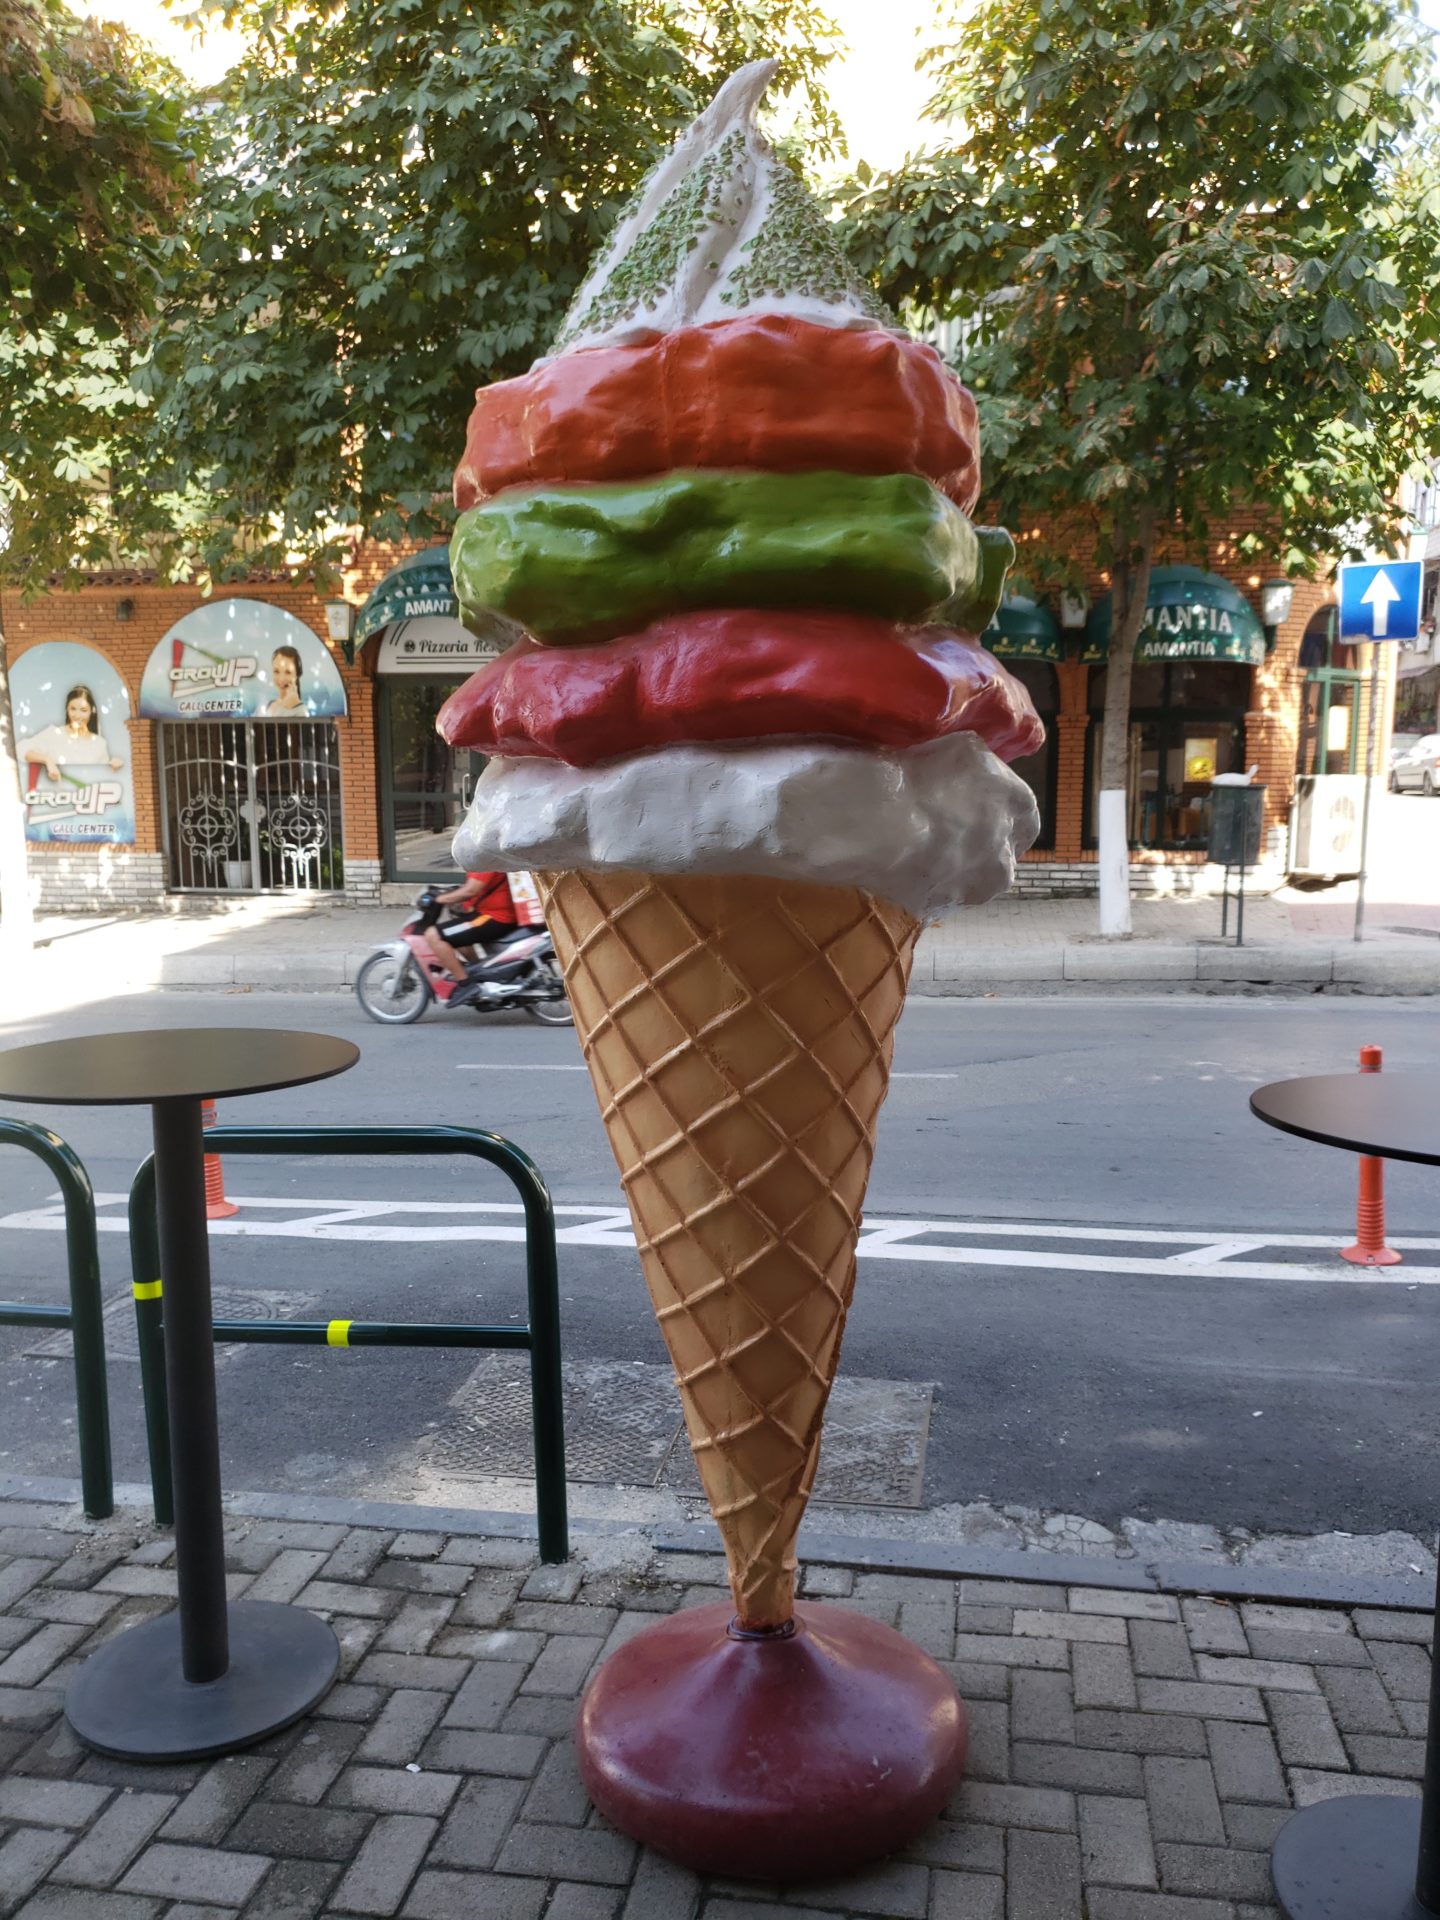 a large ice cream cone statue